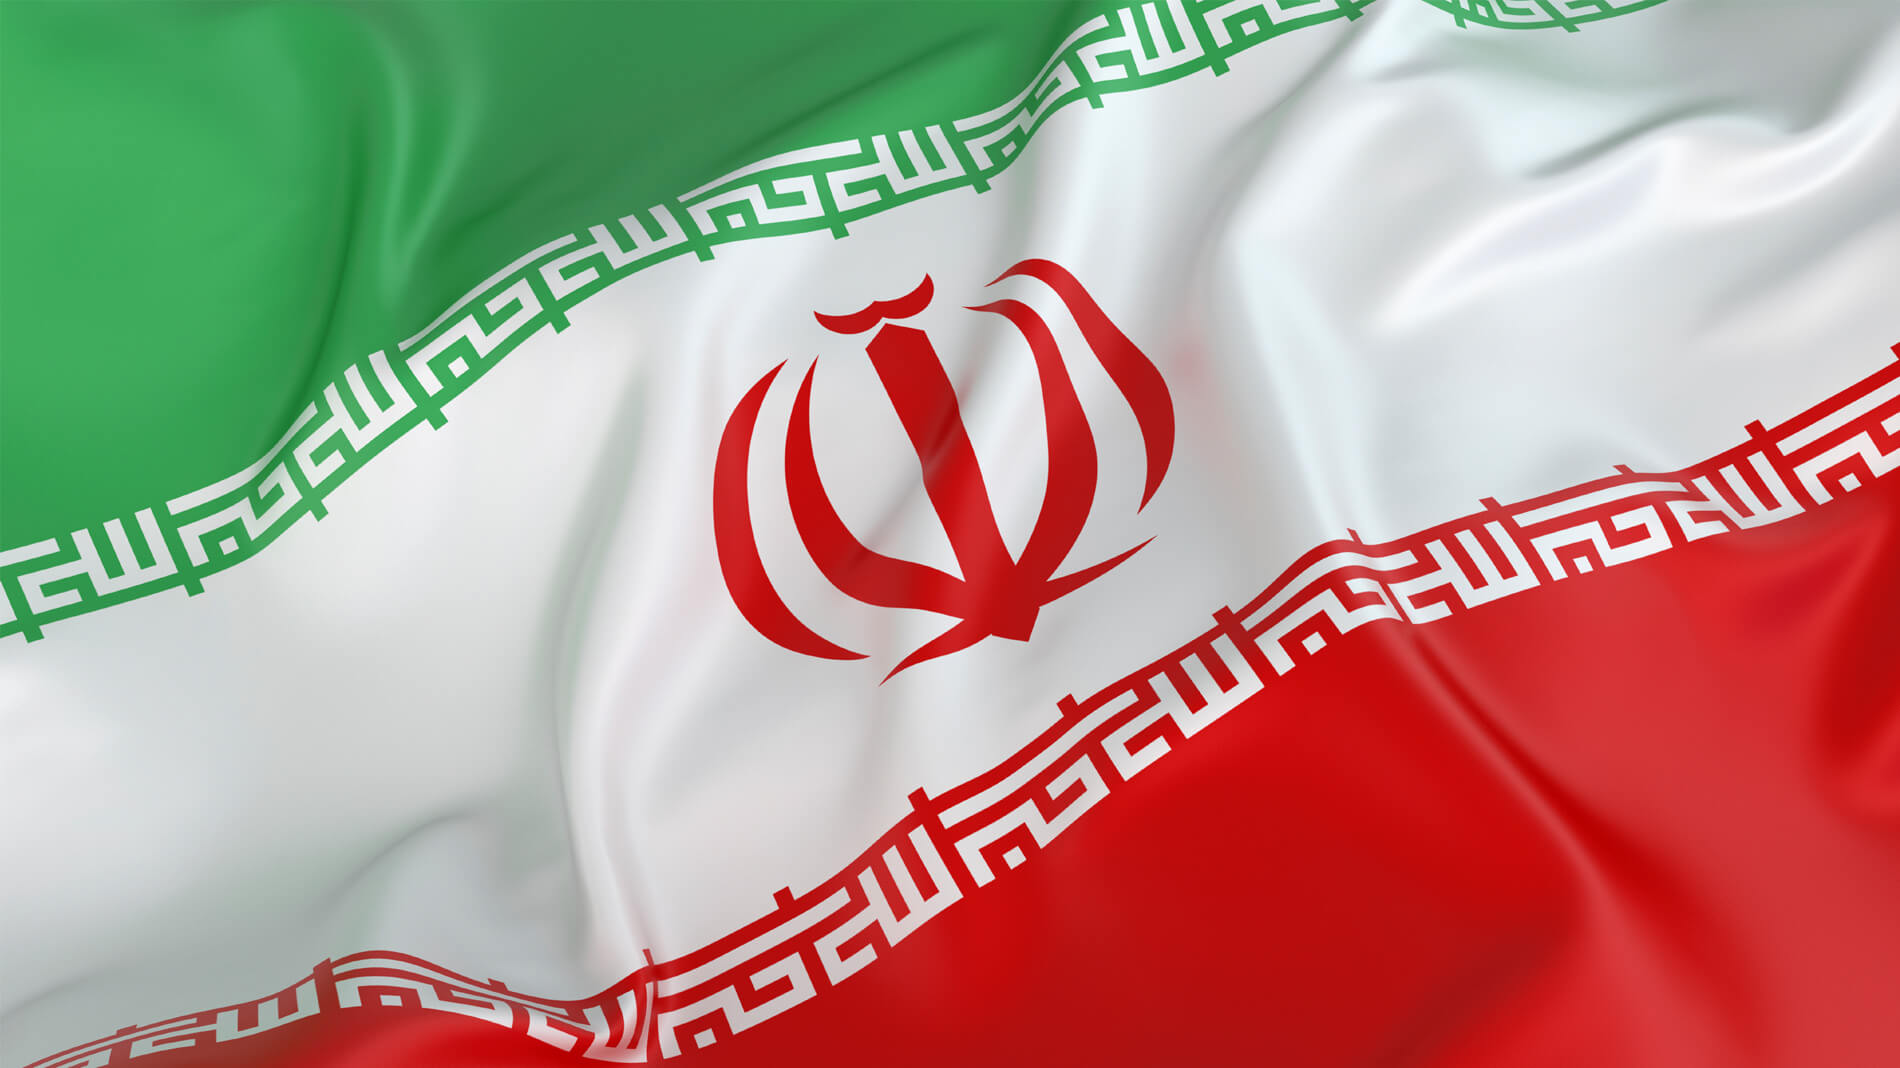 عکس های زیبا از پرچم ایران